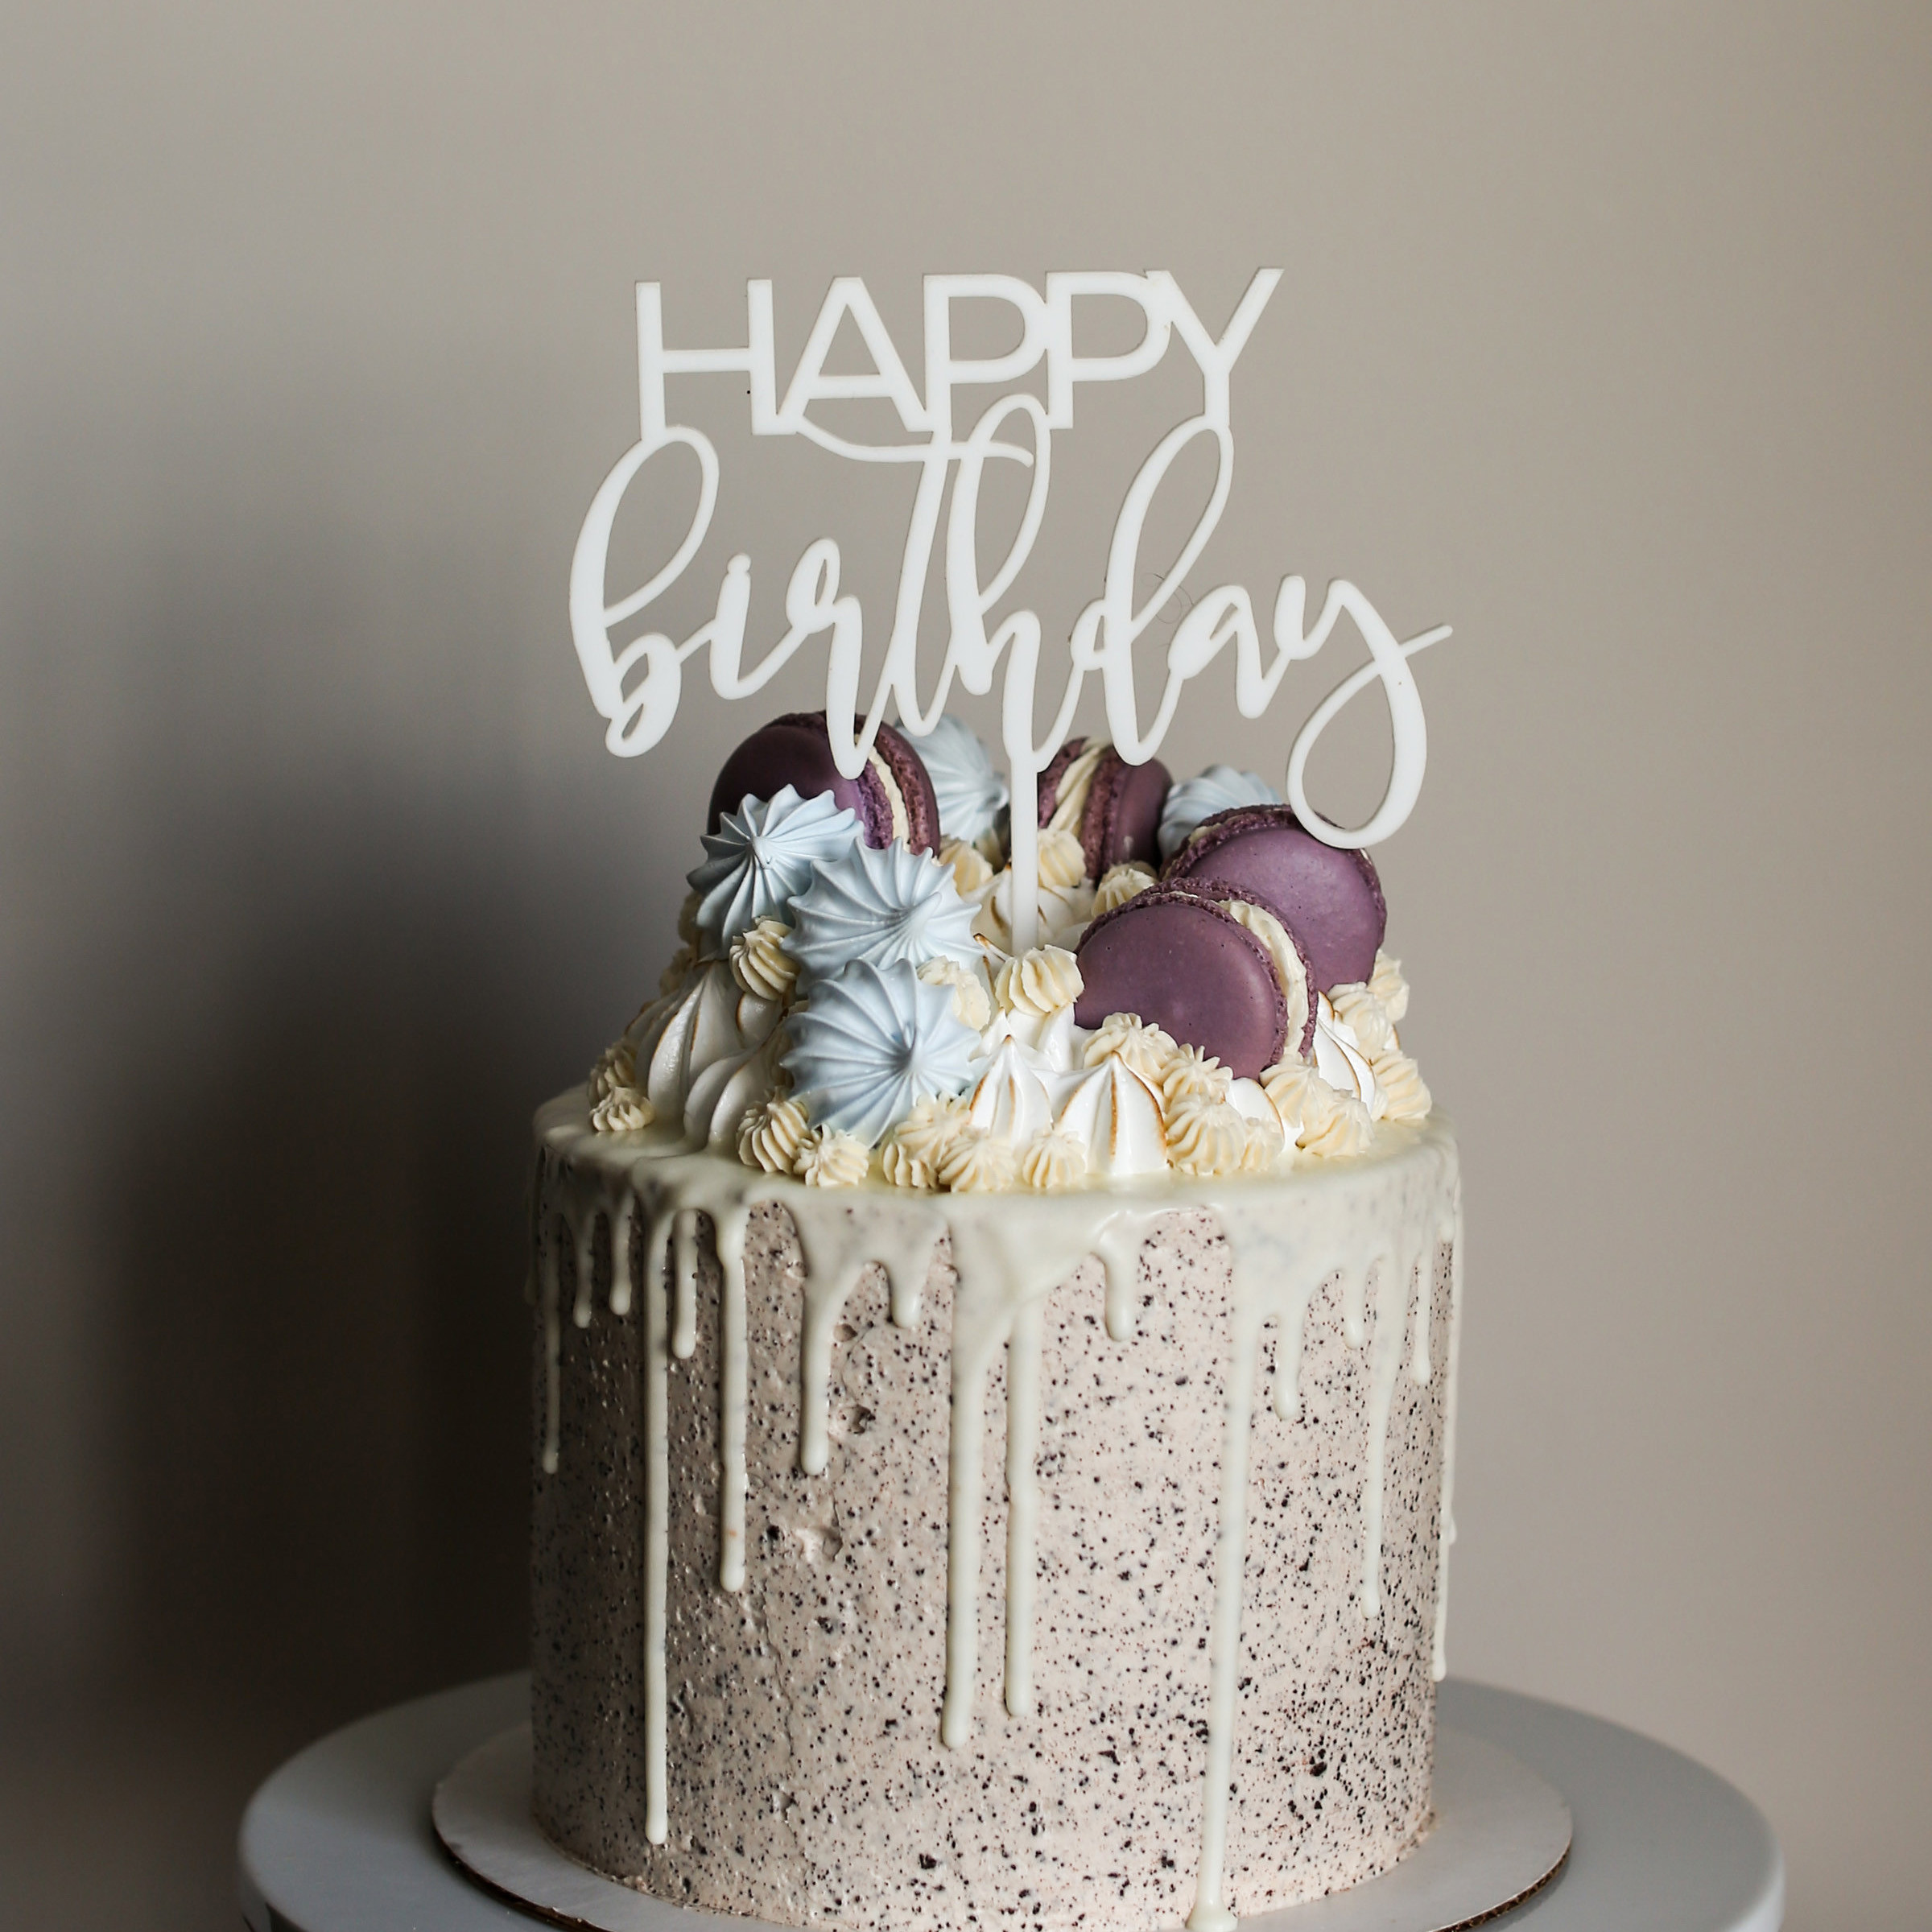 Pictures Of Happy Birthday Cakes
 Happy Birthday Cake Topper – Love Plus Design